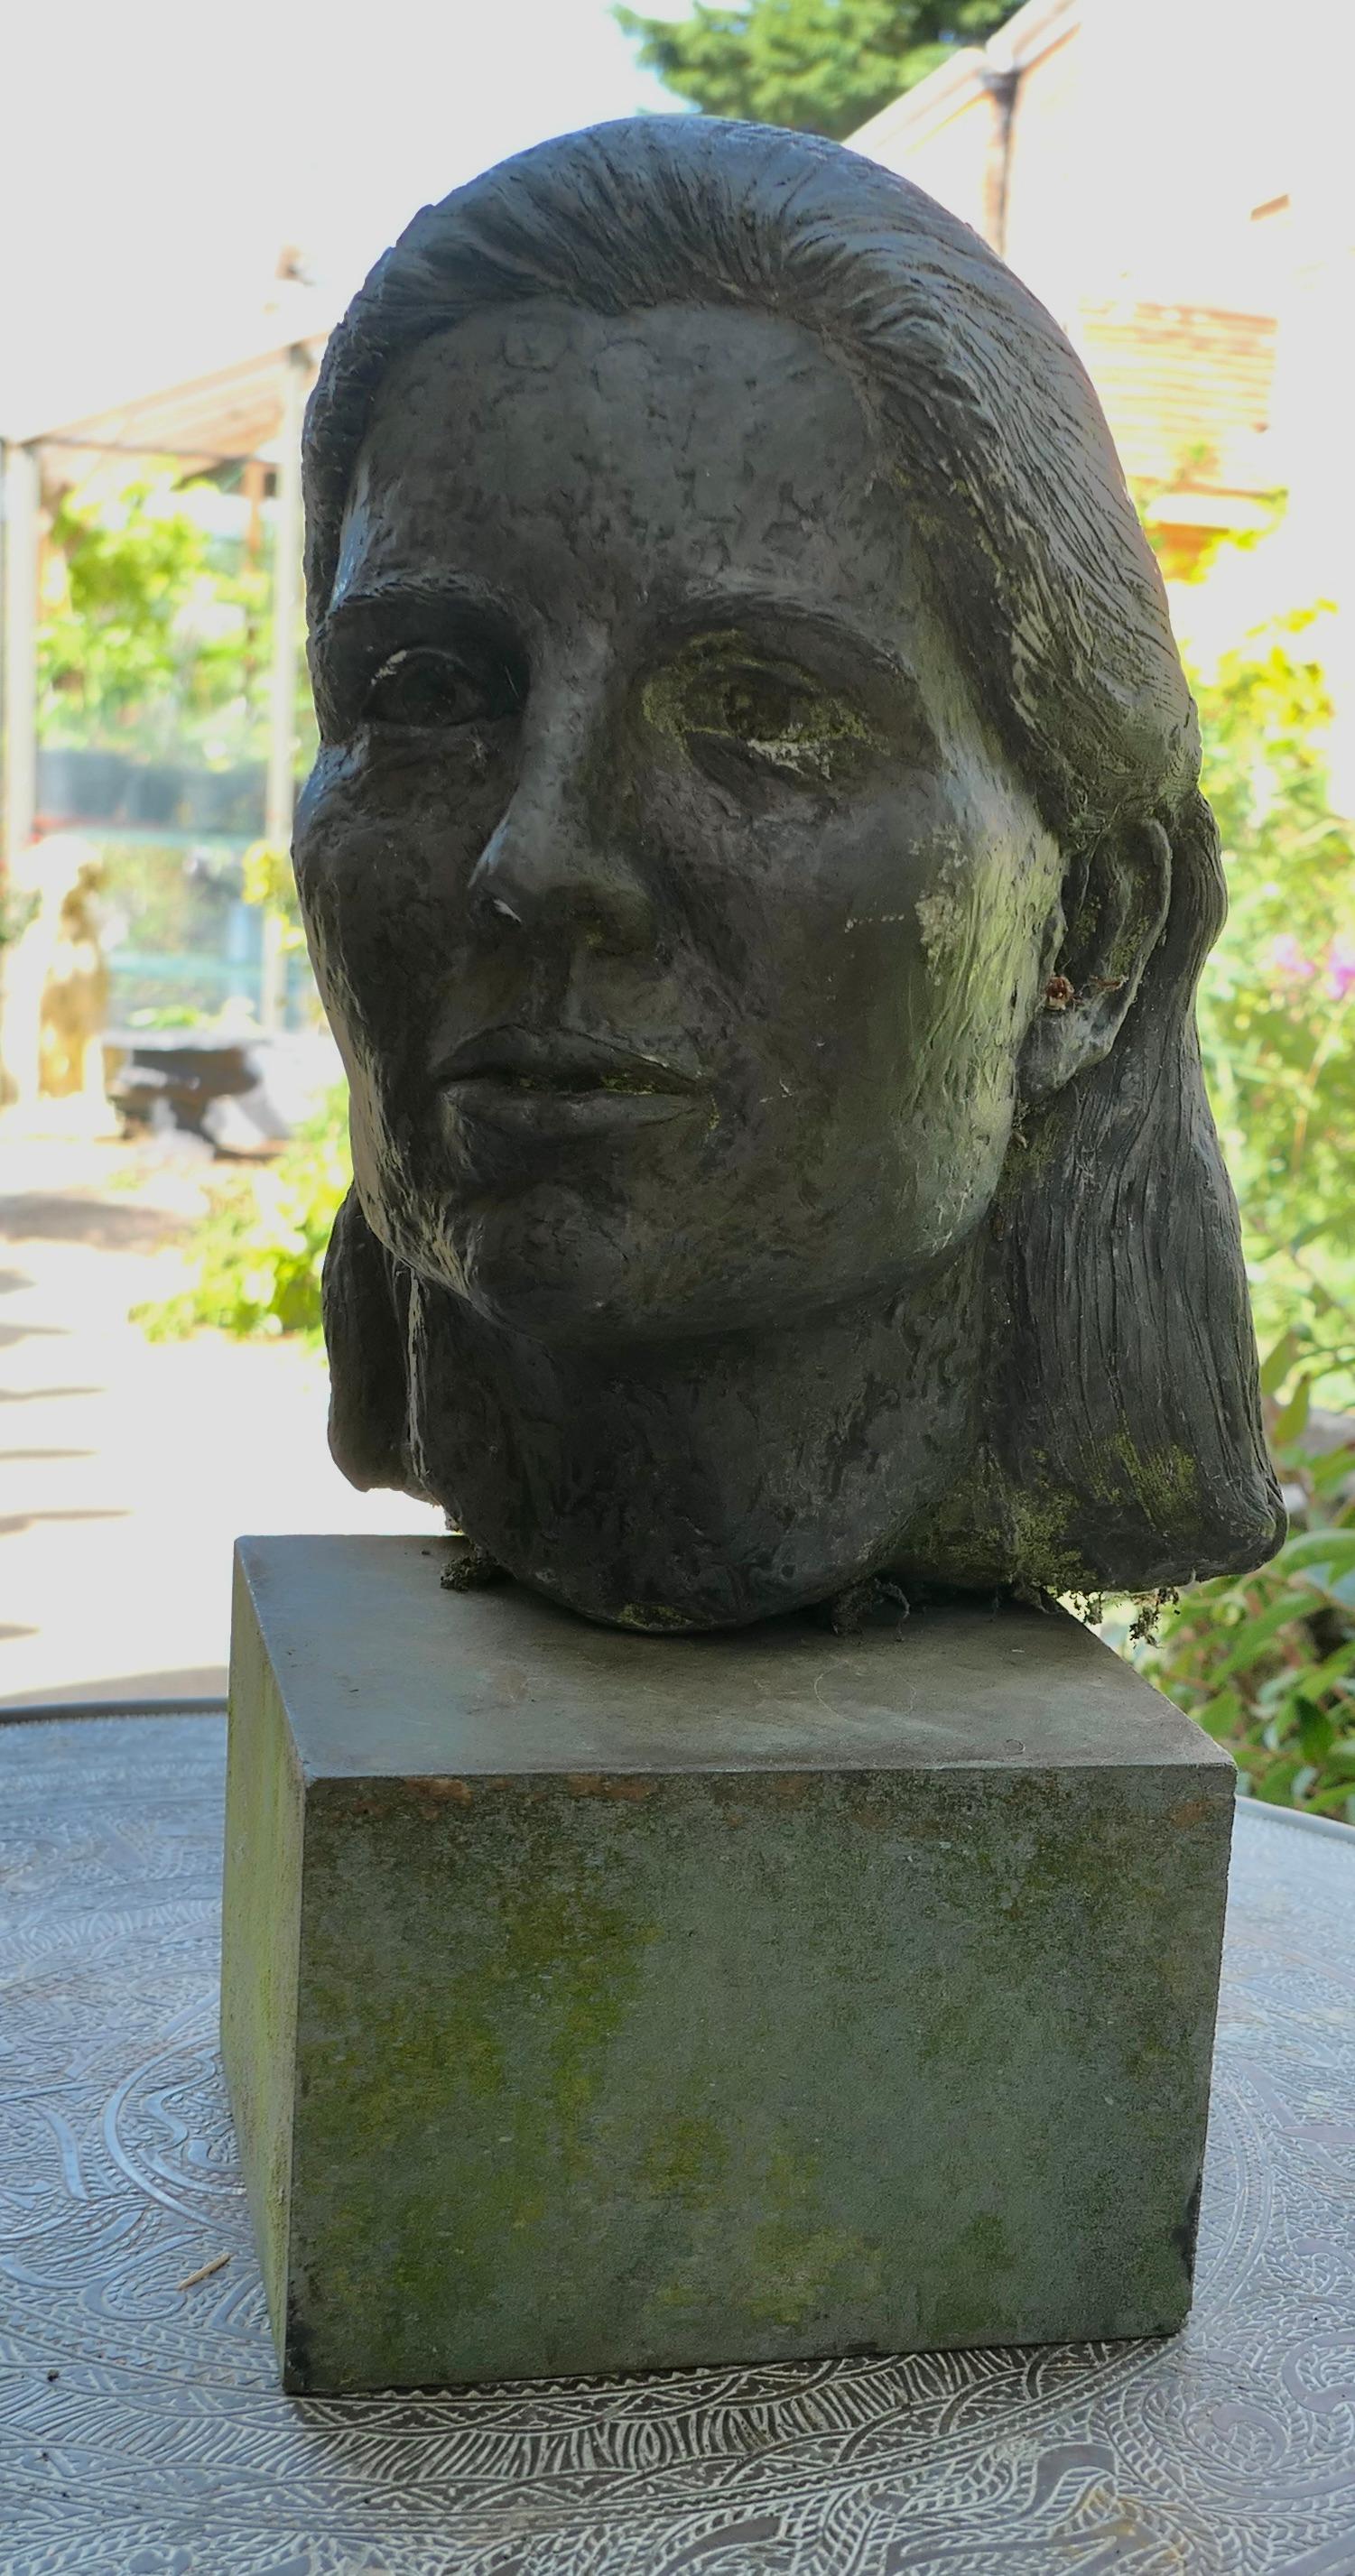 Modèle d'artiste, Buste d'une jeune femme sur un bloc d'ardoise

Il s'agit d'une très belle pièce fabriquée à la main, datant du milieu du 20e siècle, qui a été découverte dans un Studio d'art lors d'une rénovation. 

Il s'agit d'une tête